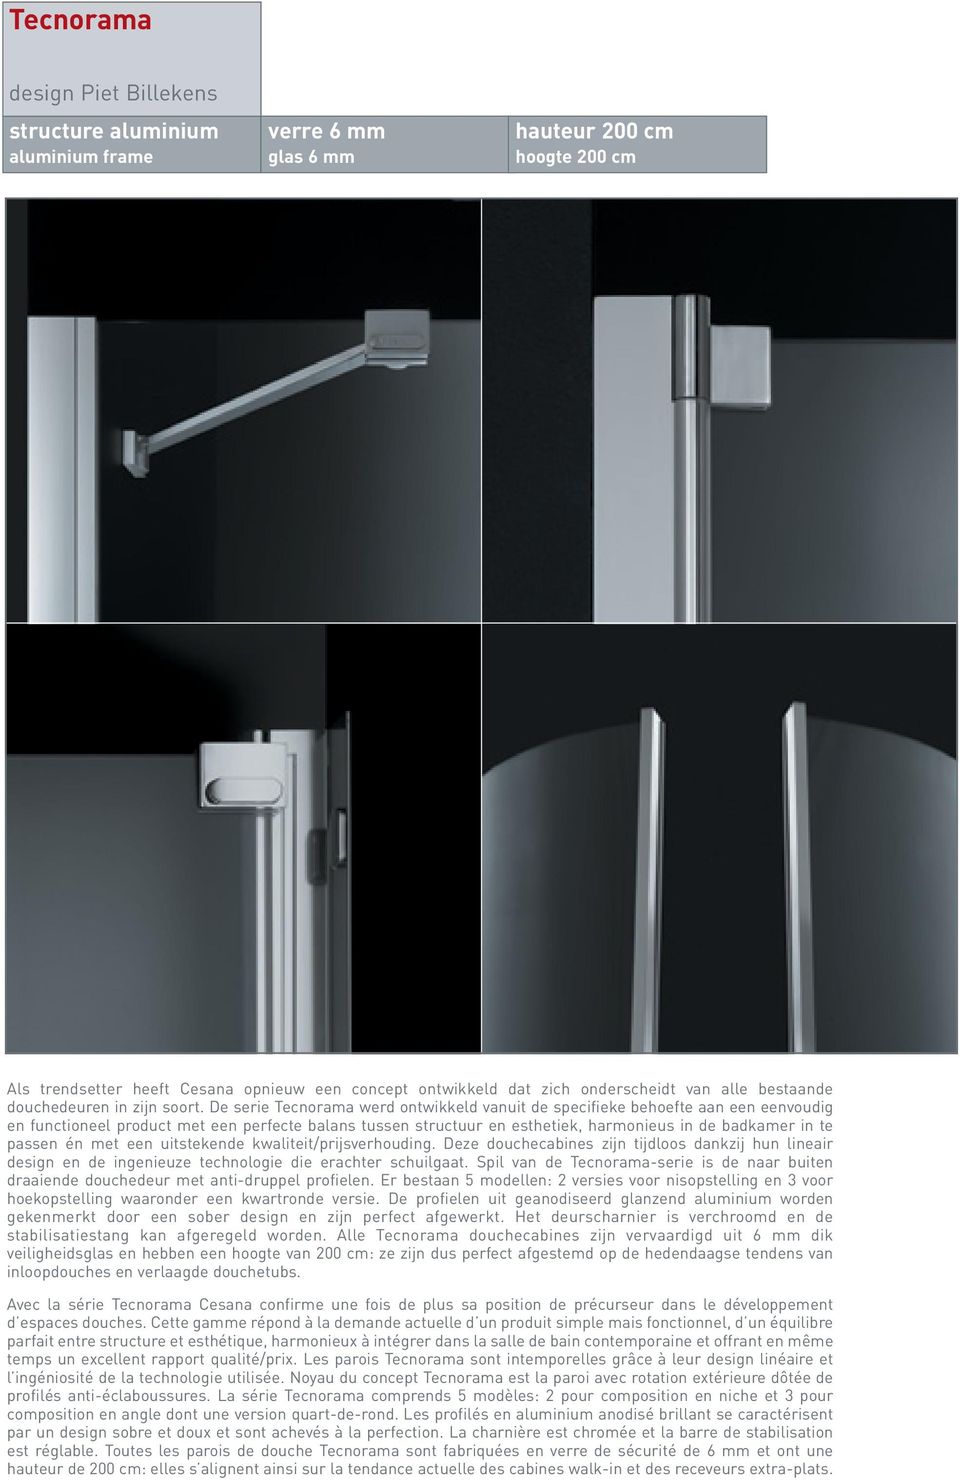 De serie Tecnorama werd ontwikkeld vanuit de specifieke behoefte aan een eenvoudig en functioneel product met een perfecte balans tussen structuur en esthetiek, harmonieus in de badkamer in te passen